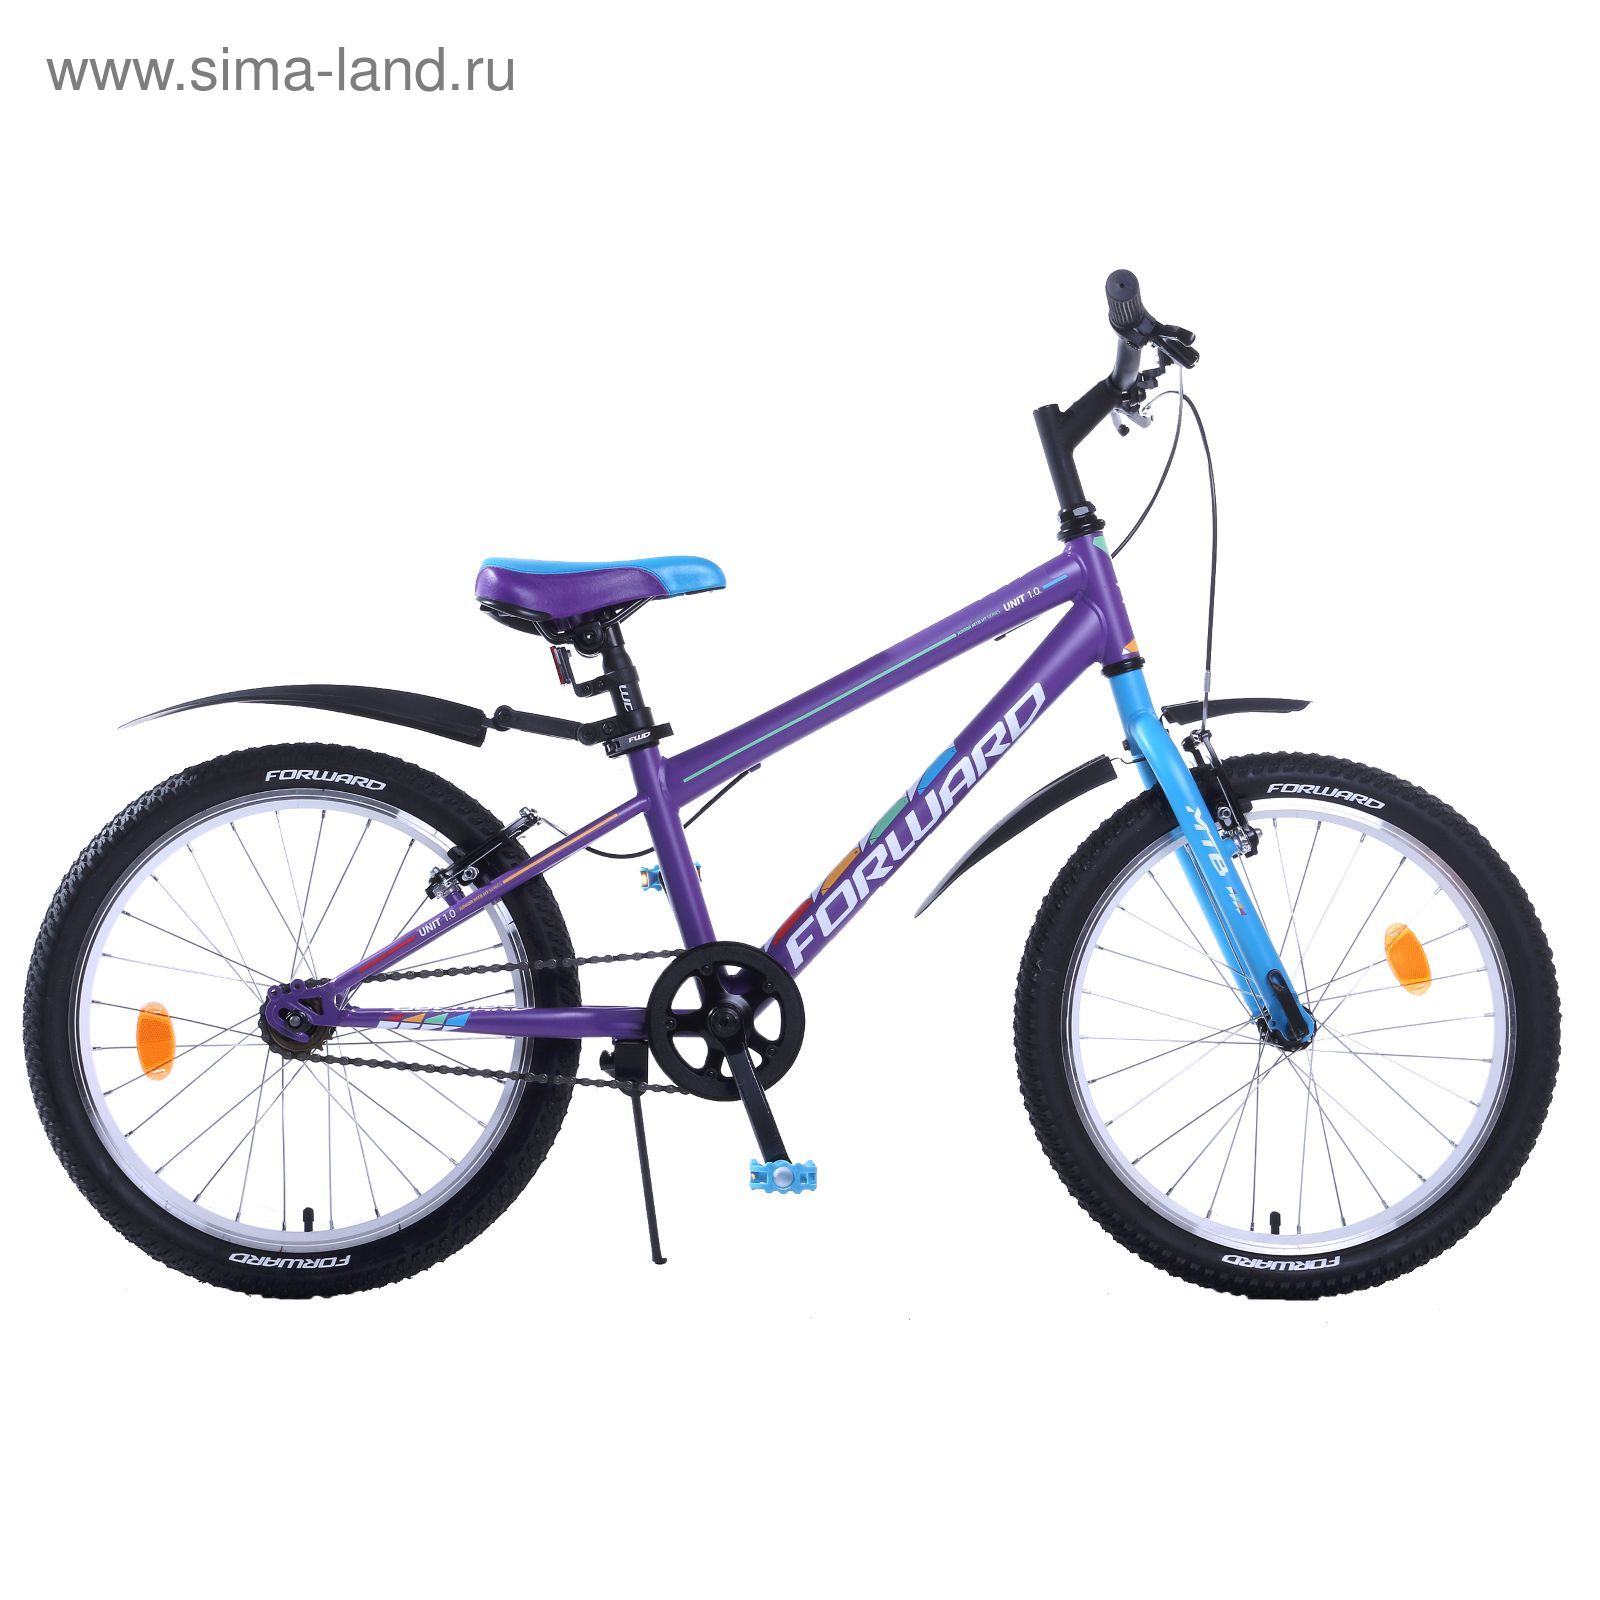 Велосипед 20" Forward Unit 1.0, 2017, цвет фиолетовый, размер 10,5"